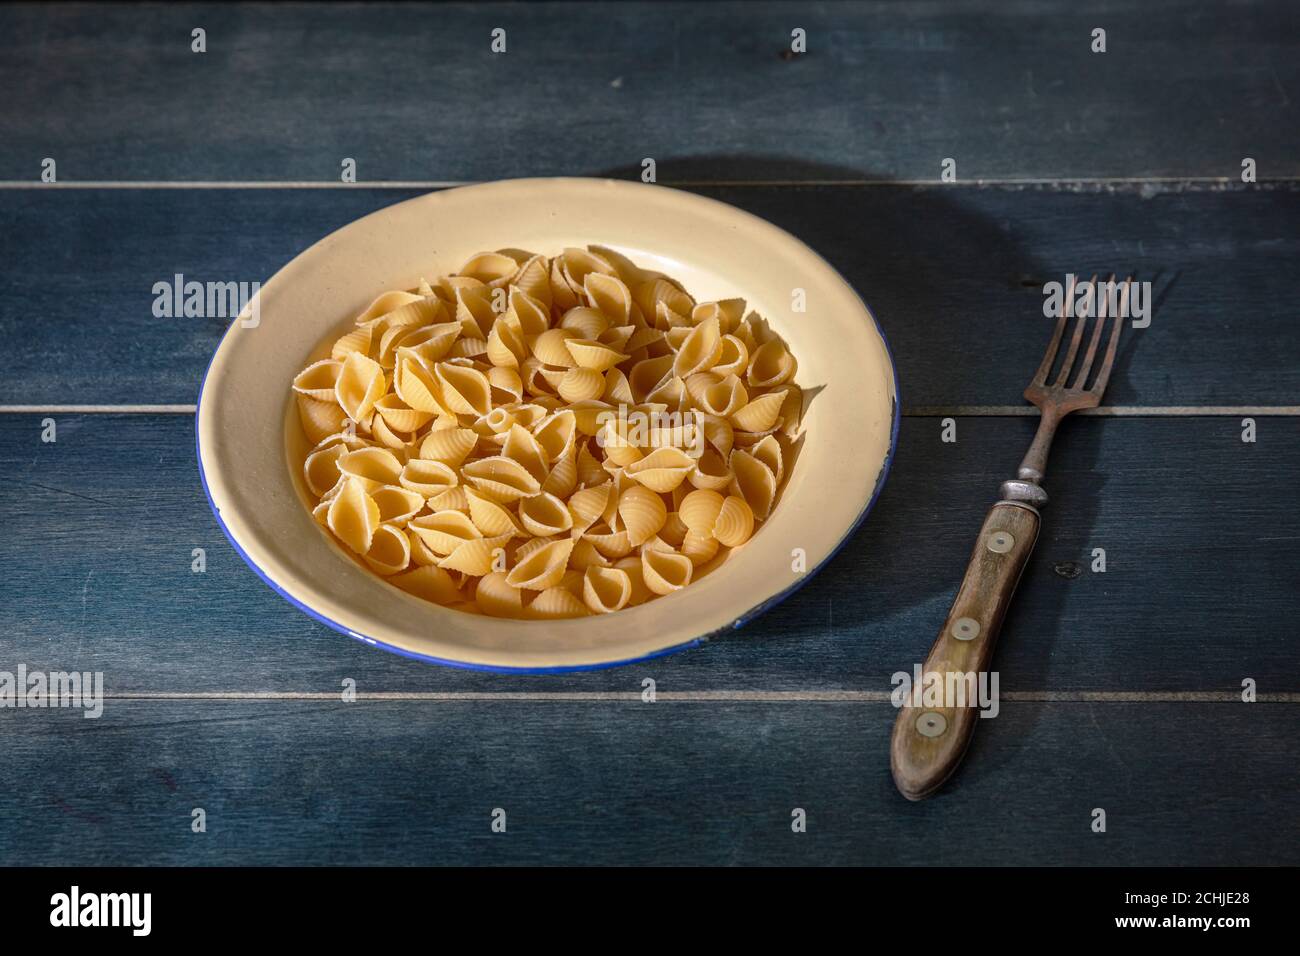 Concetto di cucina della pasta. Pasta fresca fatta in casa a forma di conchiglia servita in un piatto su sfondo di legno blu, vista closeup Foto Stock